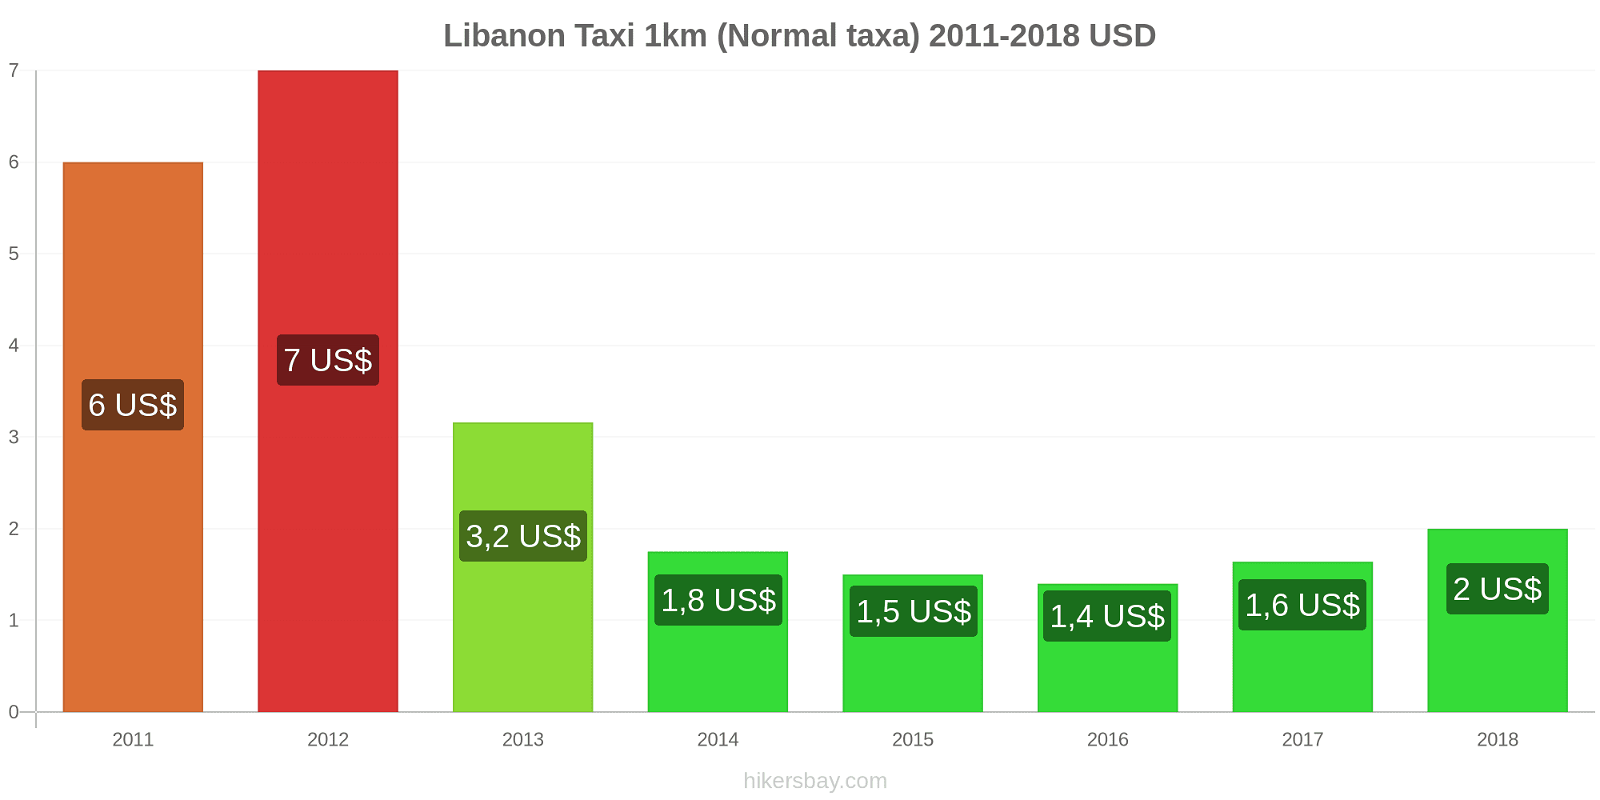 Libanon prisändringar Taxi 1km (Normal taxa) hikersbay.com